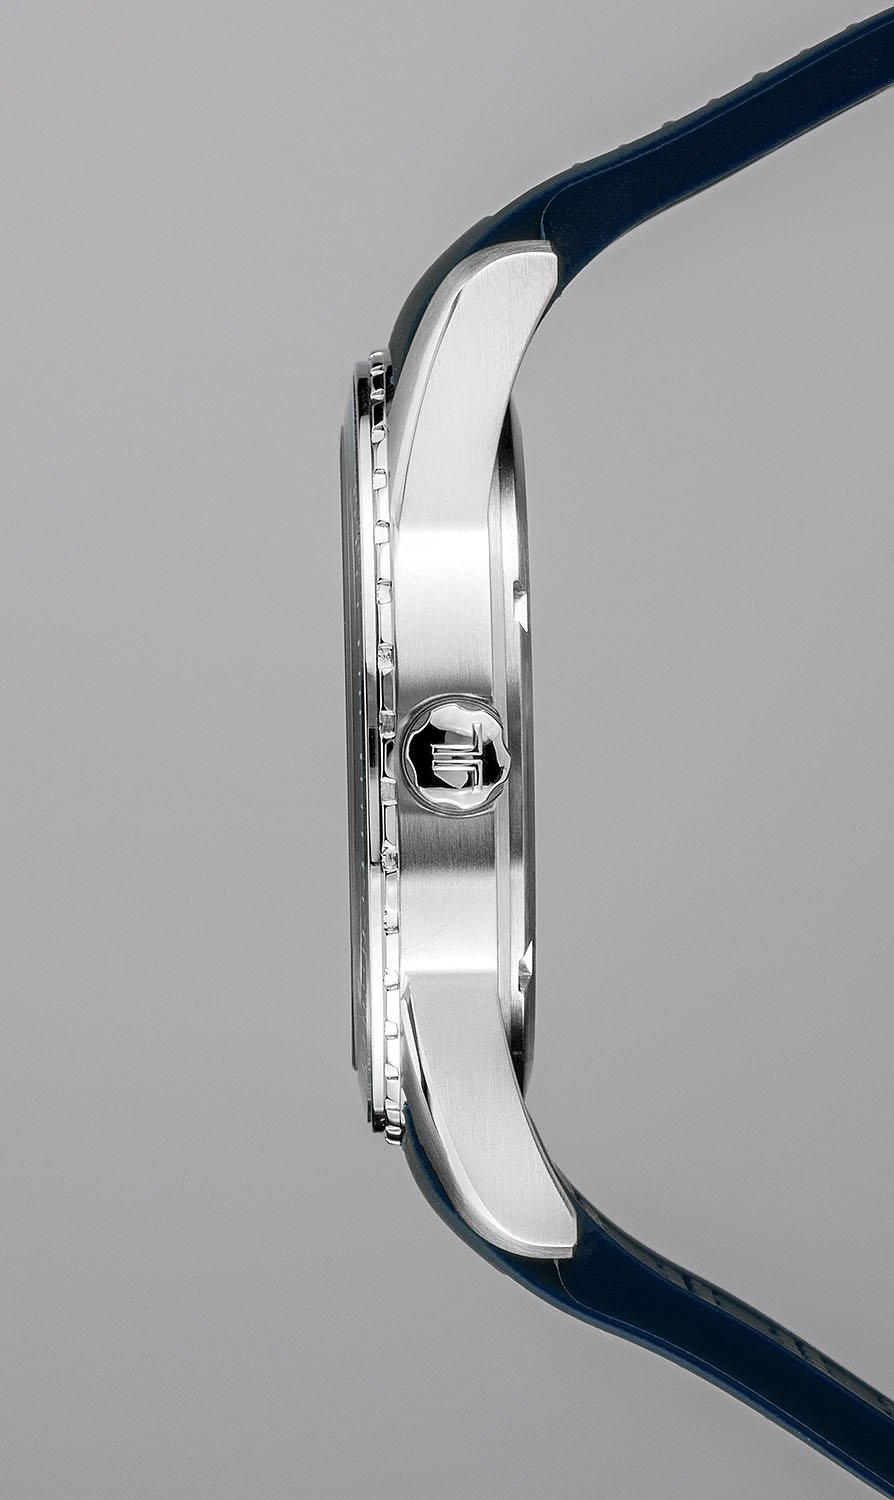 1-2060C, наручные часы Jacques Lemans